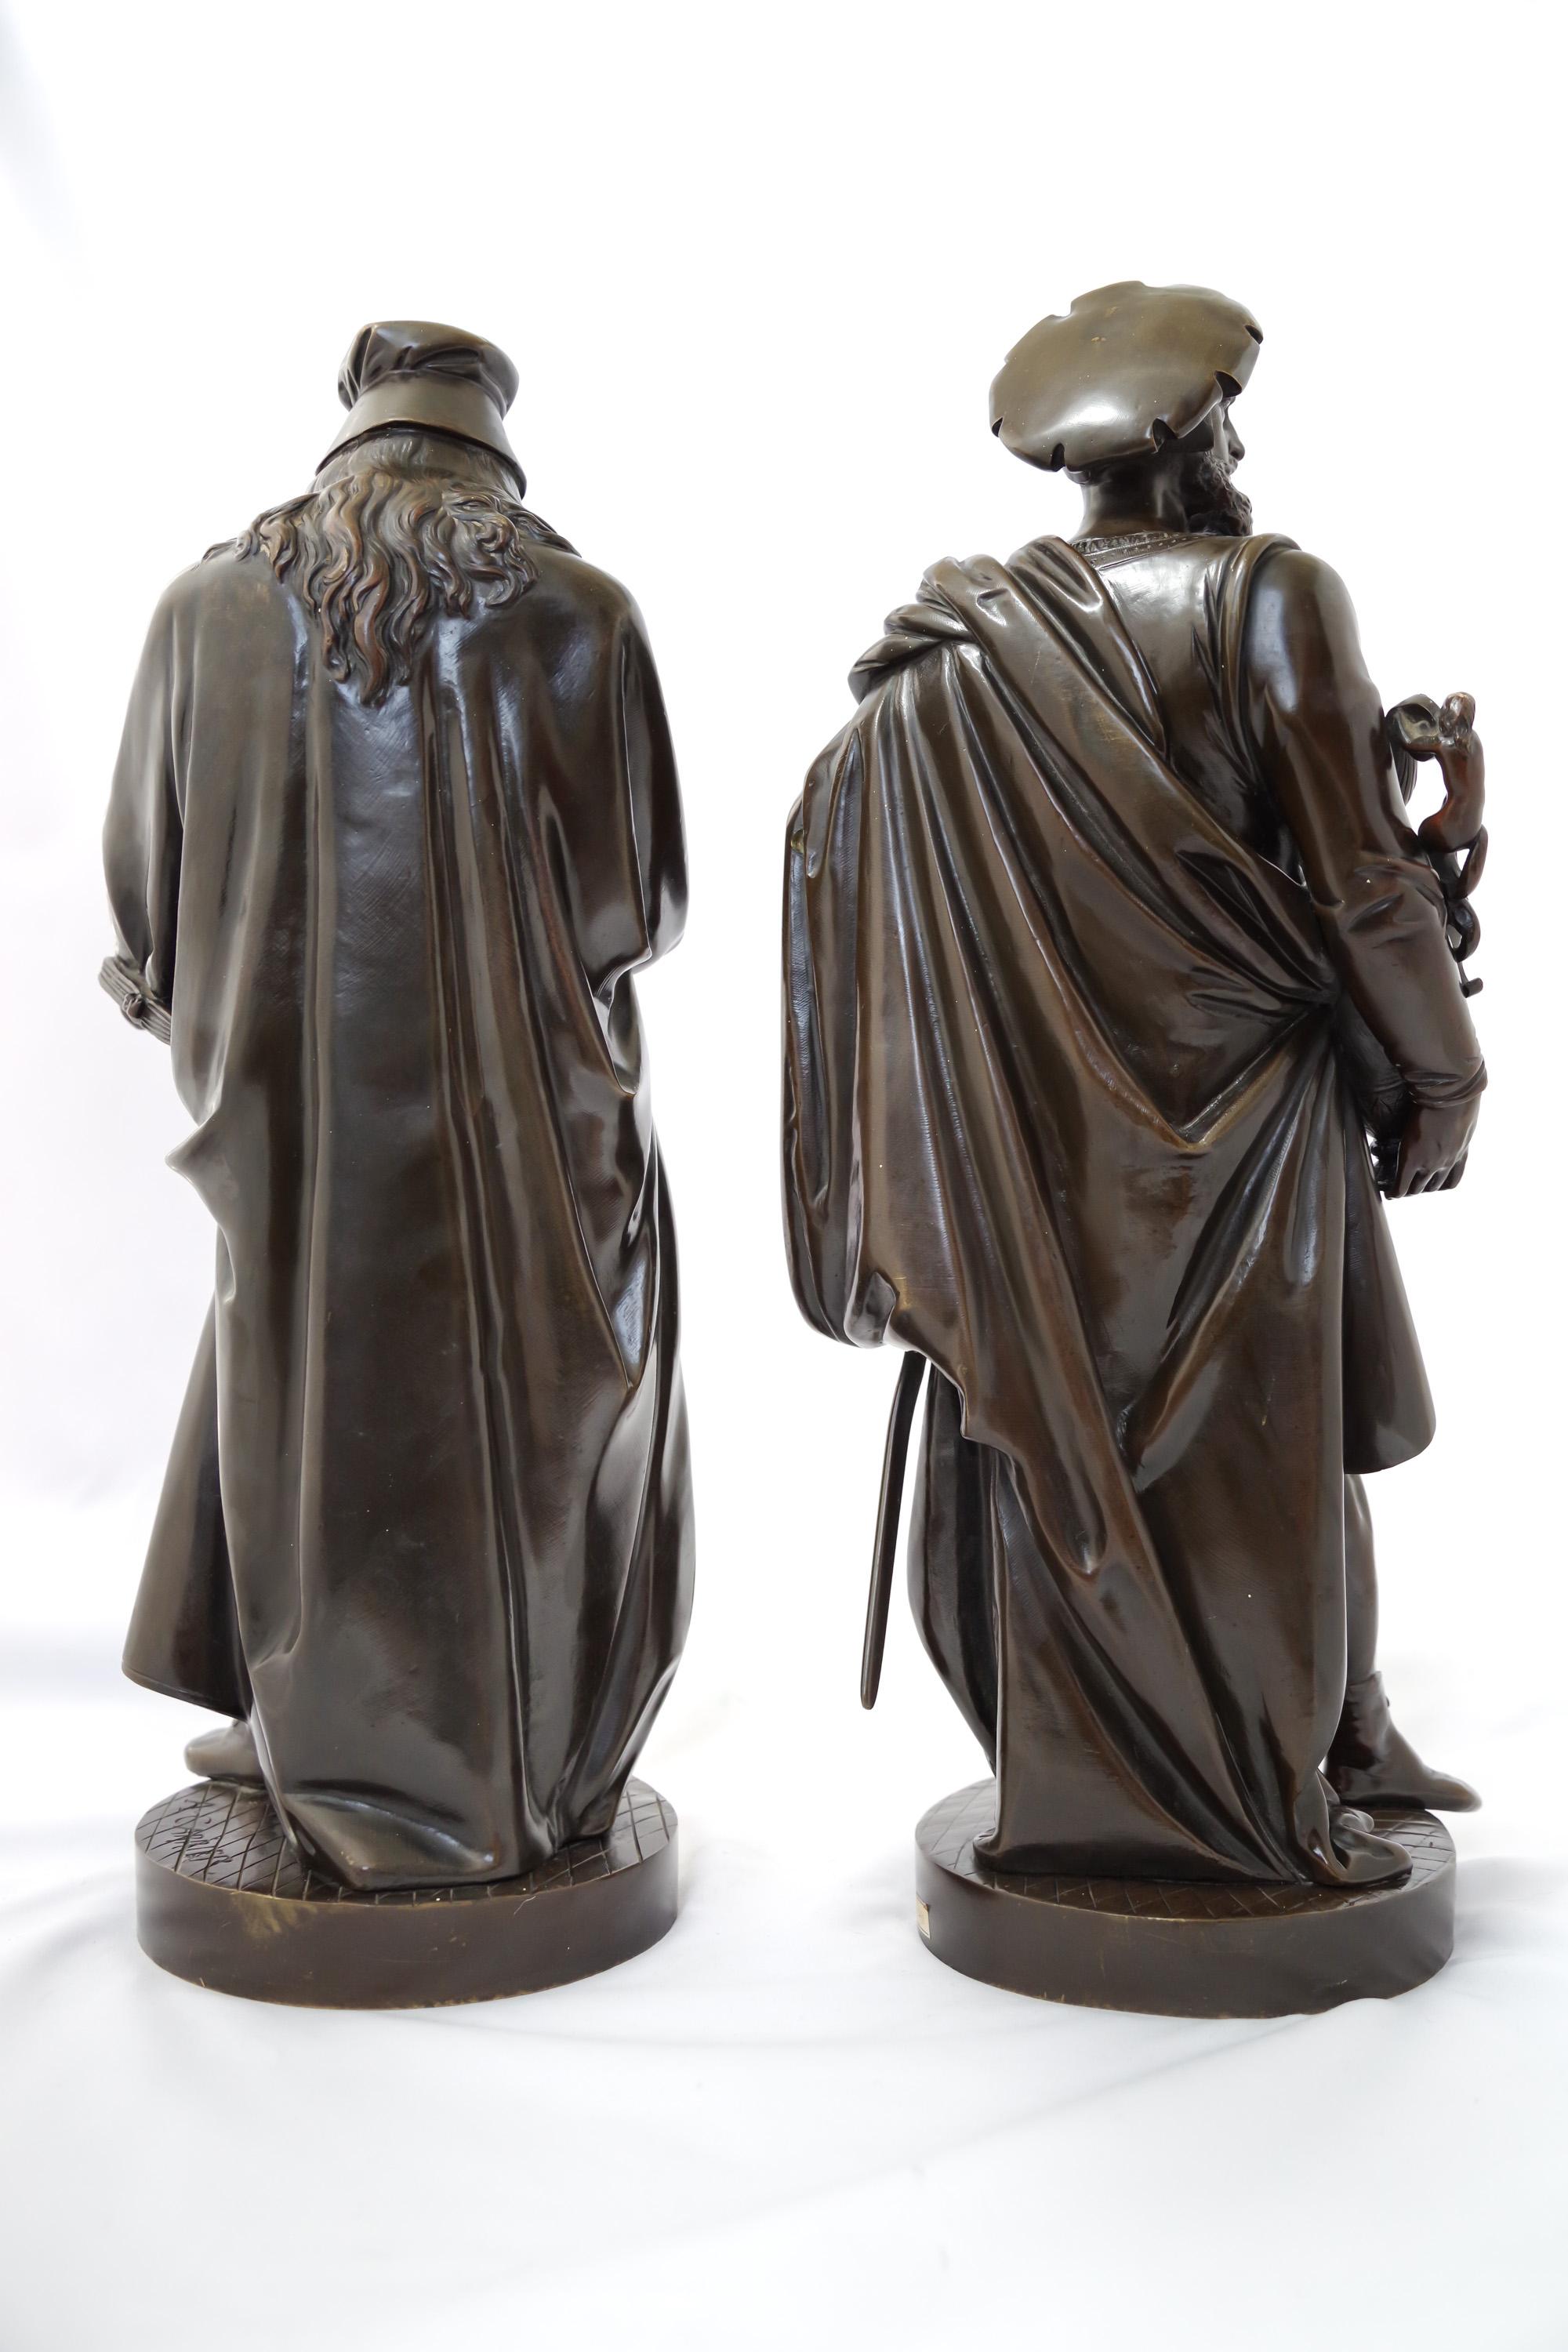 Ce couple de sculptures a été réalisé par Albert-Ernest Carrier-Belleuse, un artiste français et l'un des membres fondateurs de la Société Nationale des Beaux-Arts, qui vivait au 19ème siècle. Cette œuvre en bronze patiné foncé représente Da Vinci